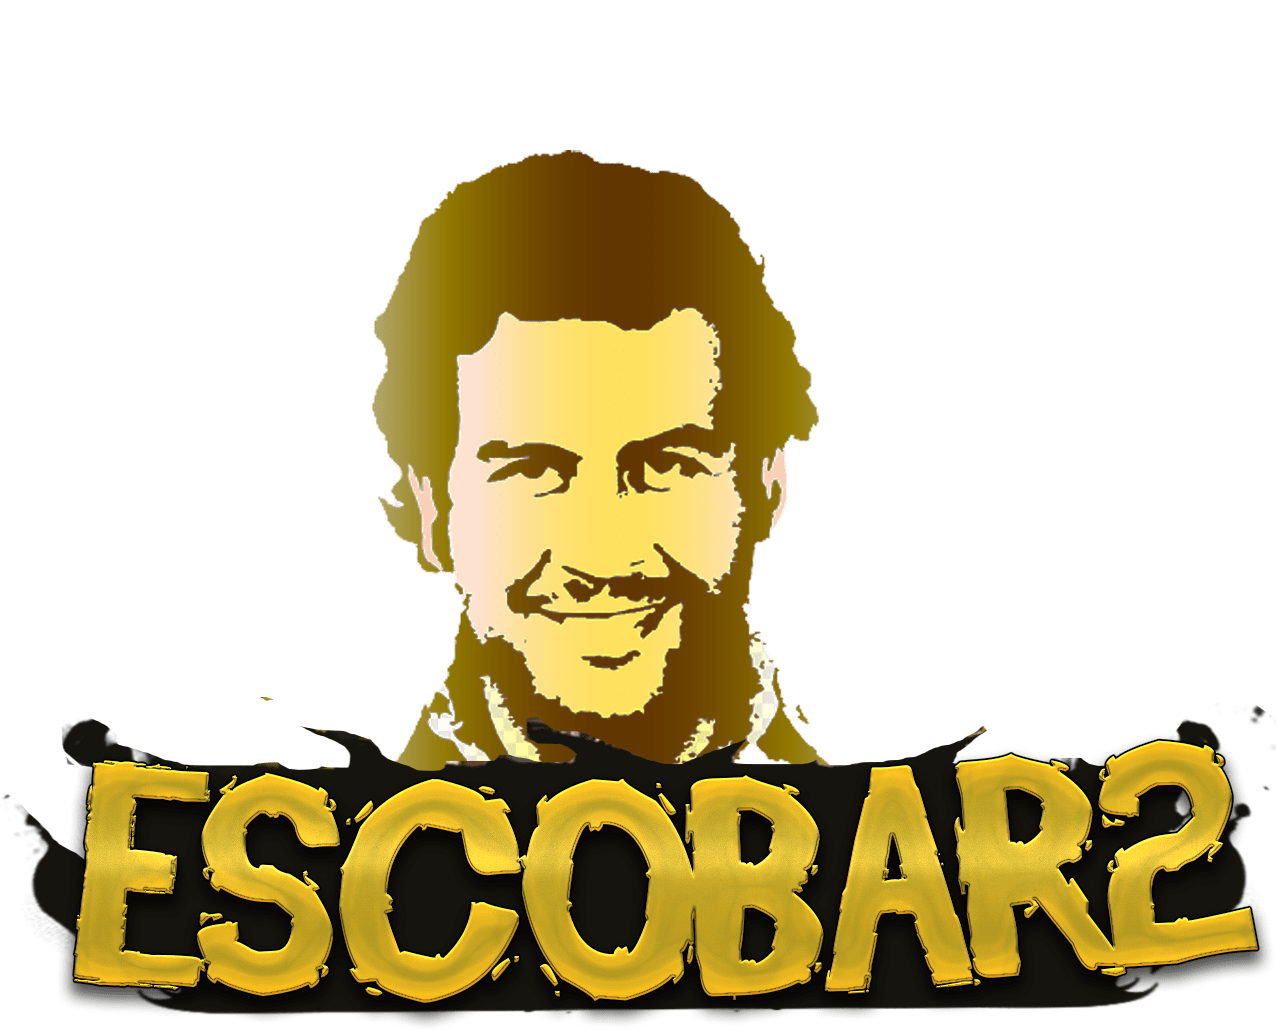 Escobar2